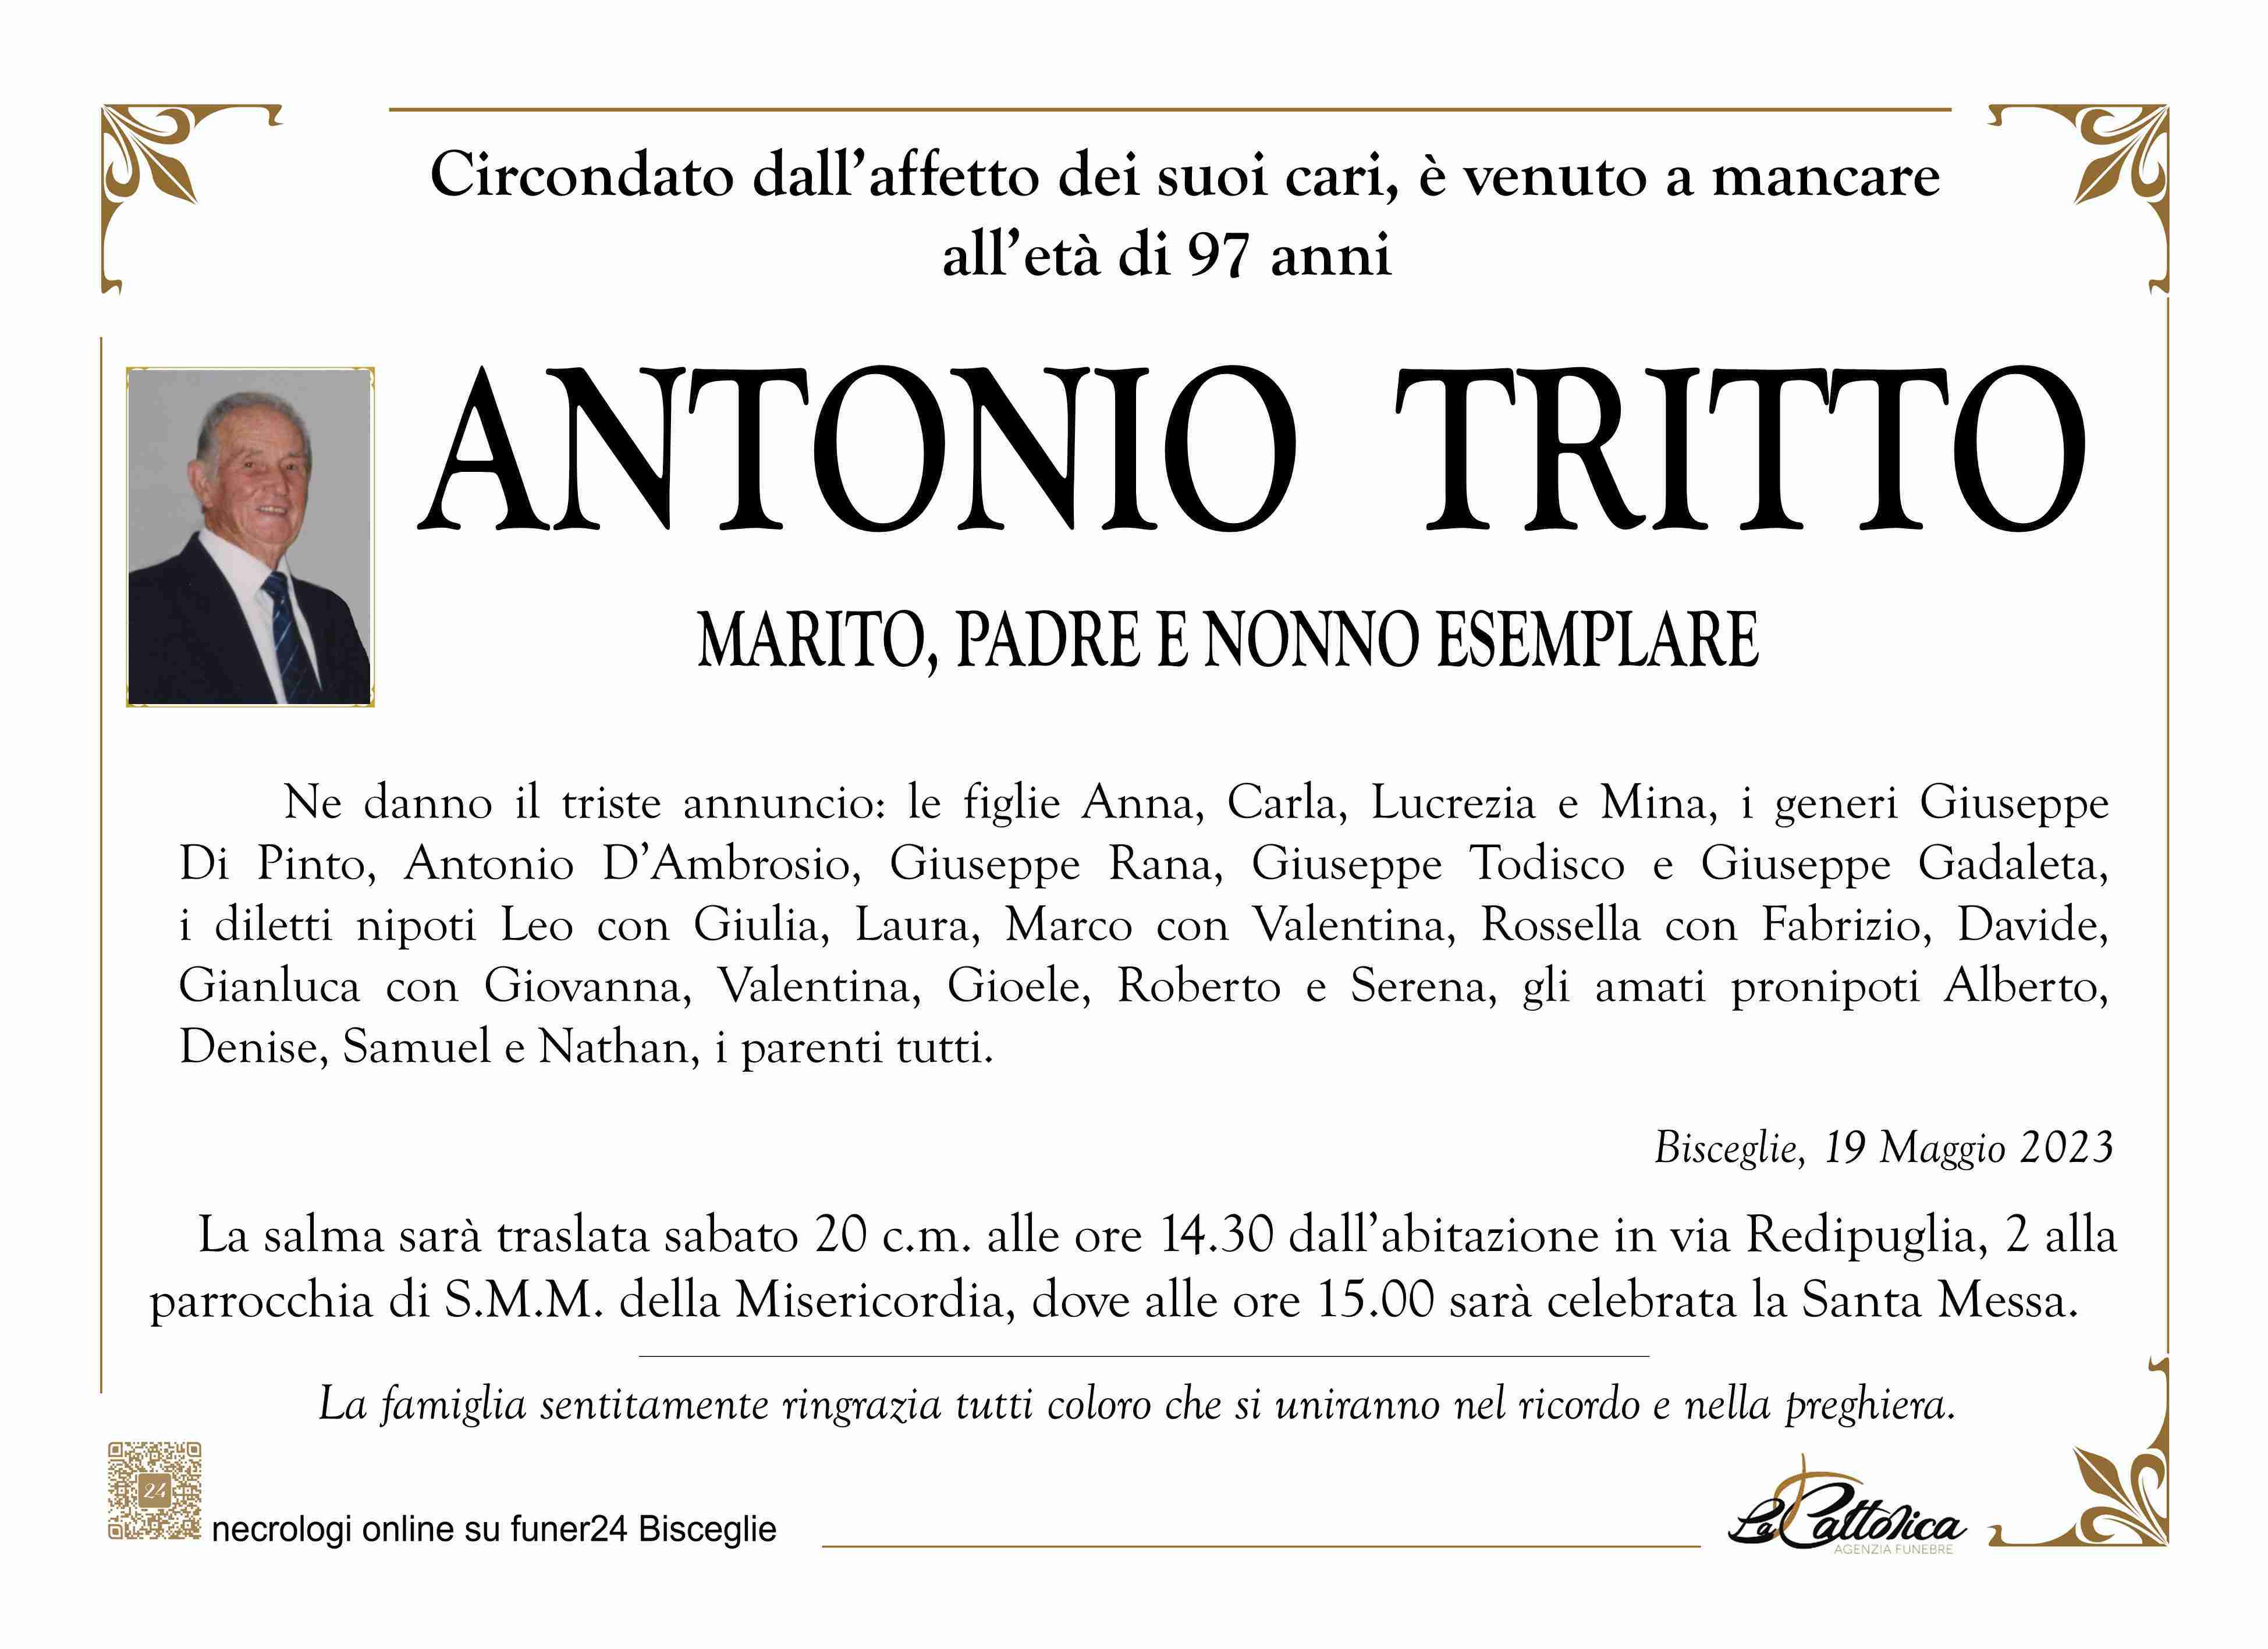 Antonio Tritto